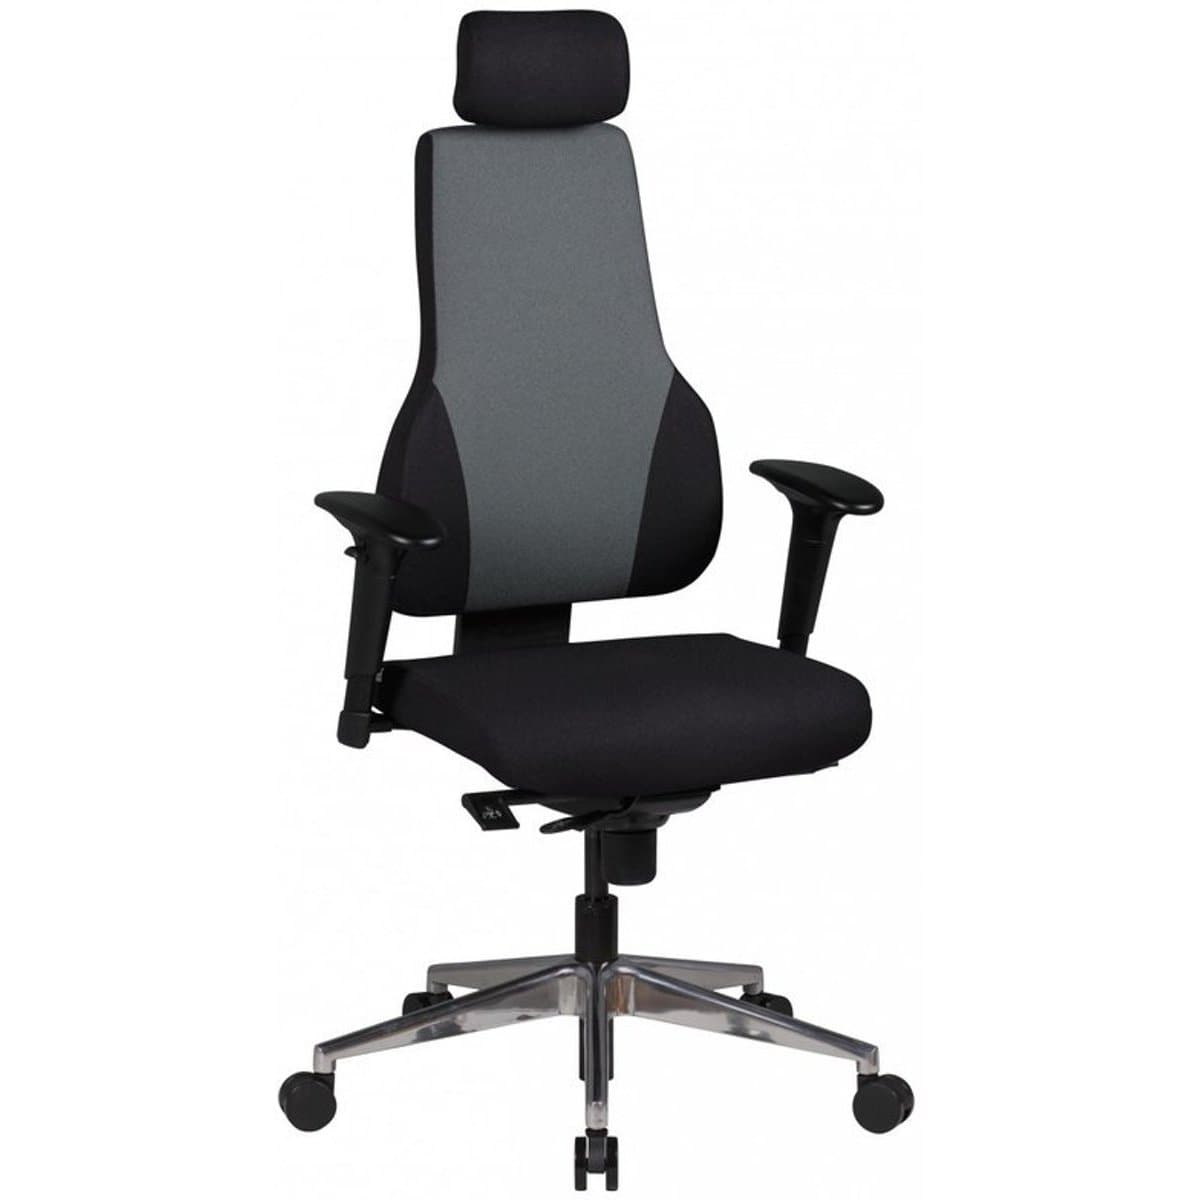 Chaise de bureau Nancy's Fieldston - Chaise de direction - Chaise pivotante ergonomique - Chaises de bureau pour adultes - Confort d'assise élevé